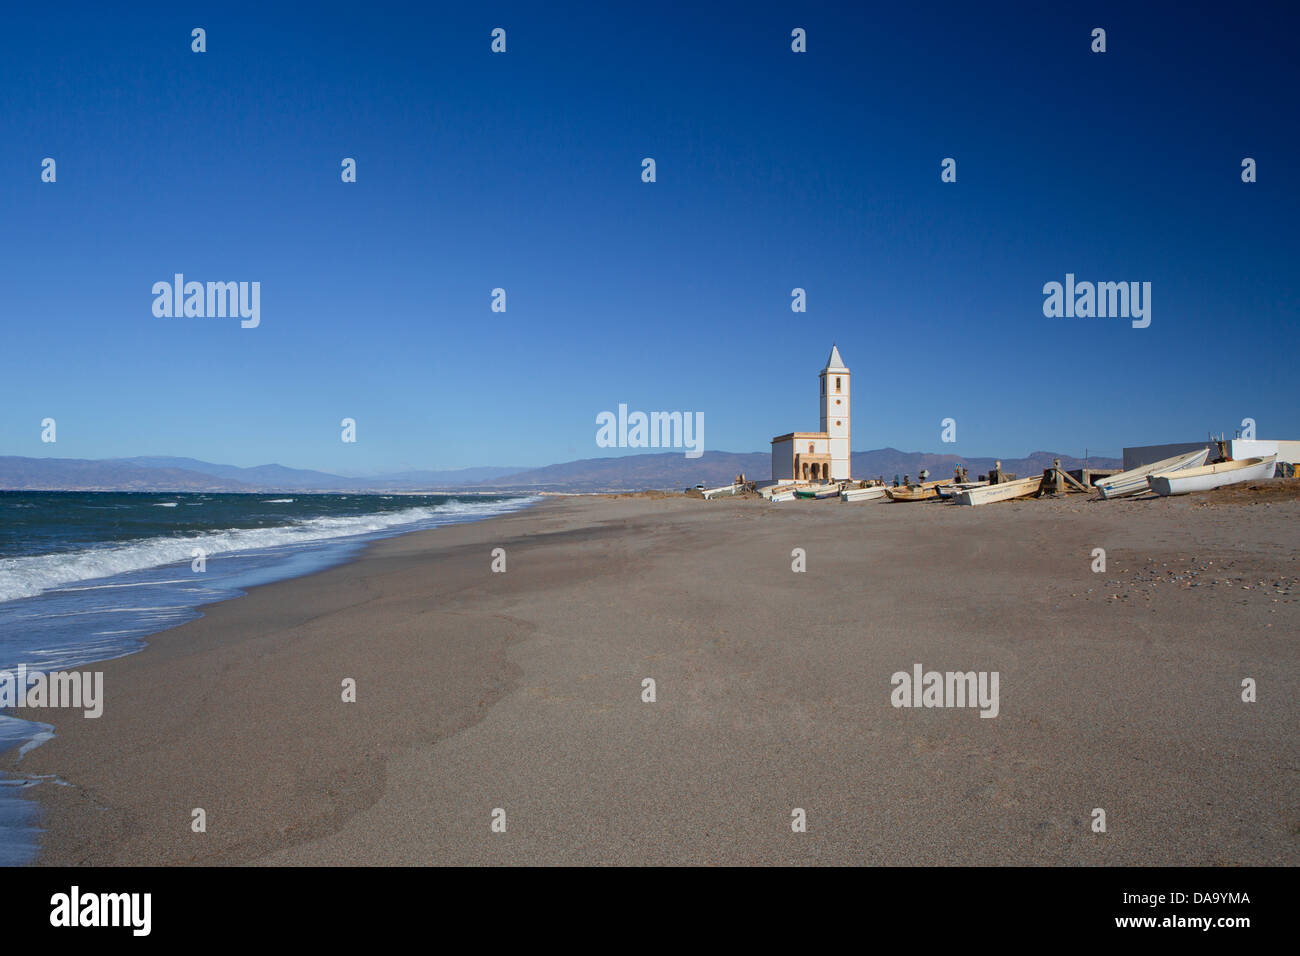 Almeria, Spagna, Europa, Andalusia, spiaggia, blu, chiesa, costa, paesaggio, lunga, Mediterraneo, sabbia, solitaria, turistica, viaggi Foto Stock